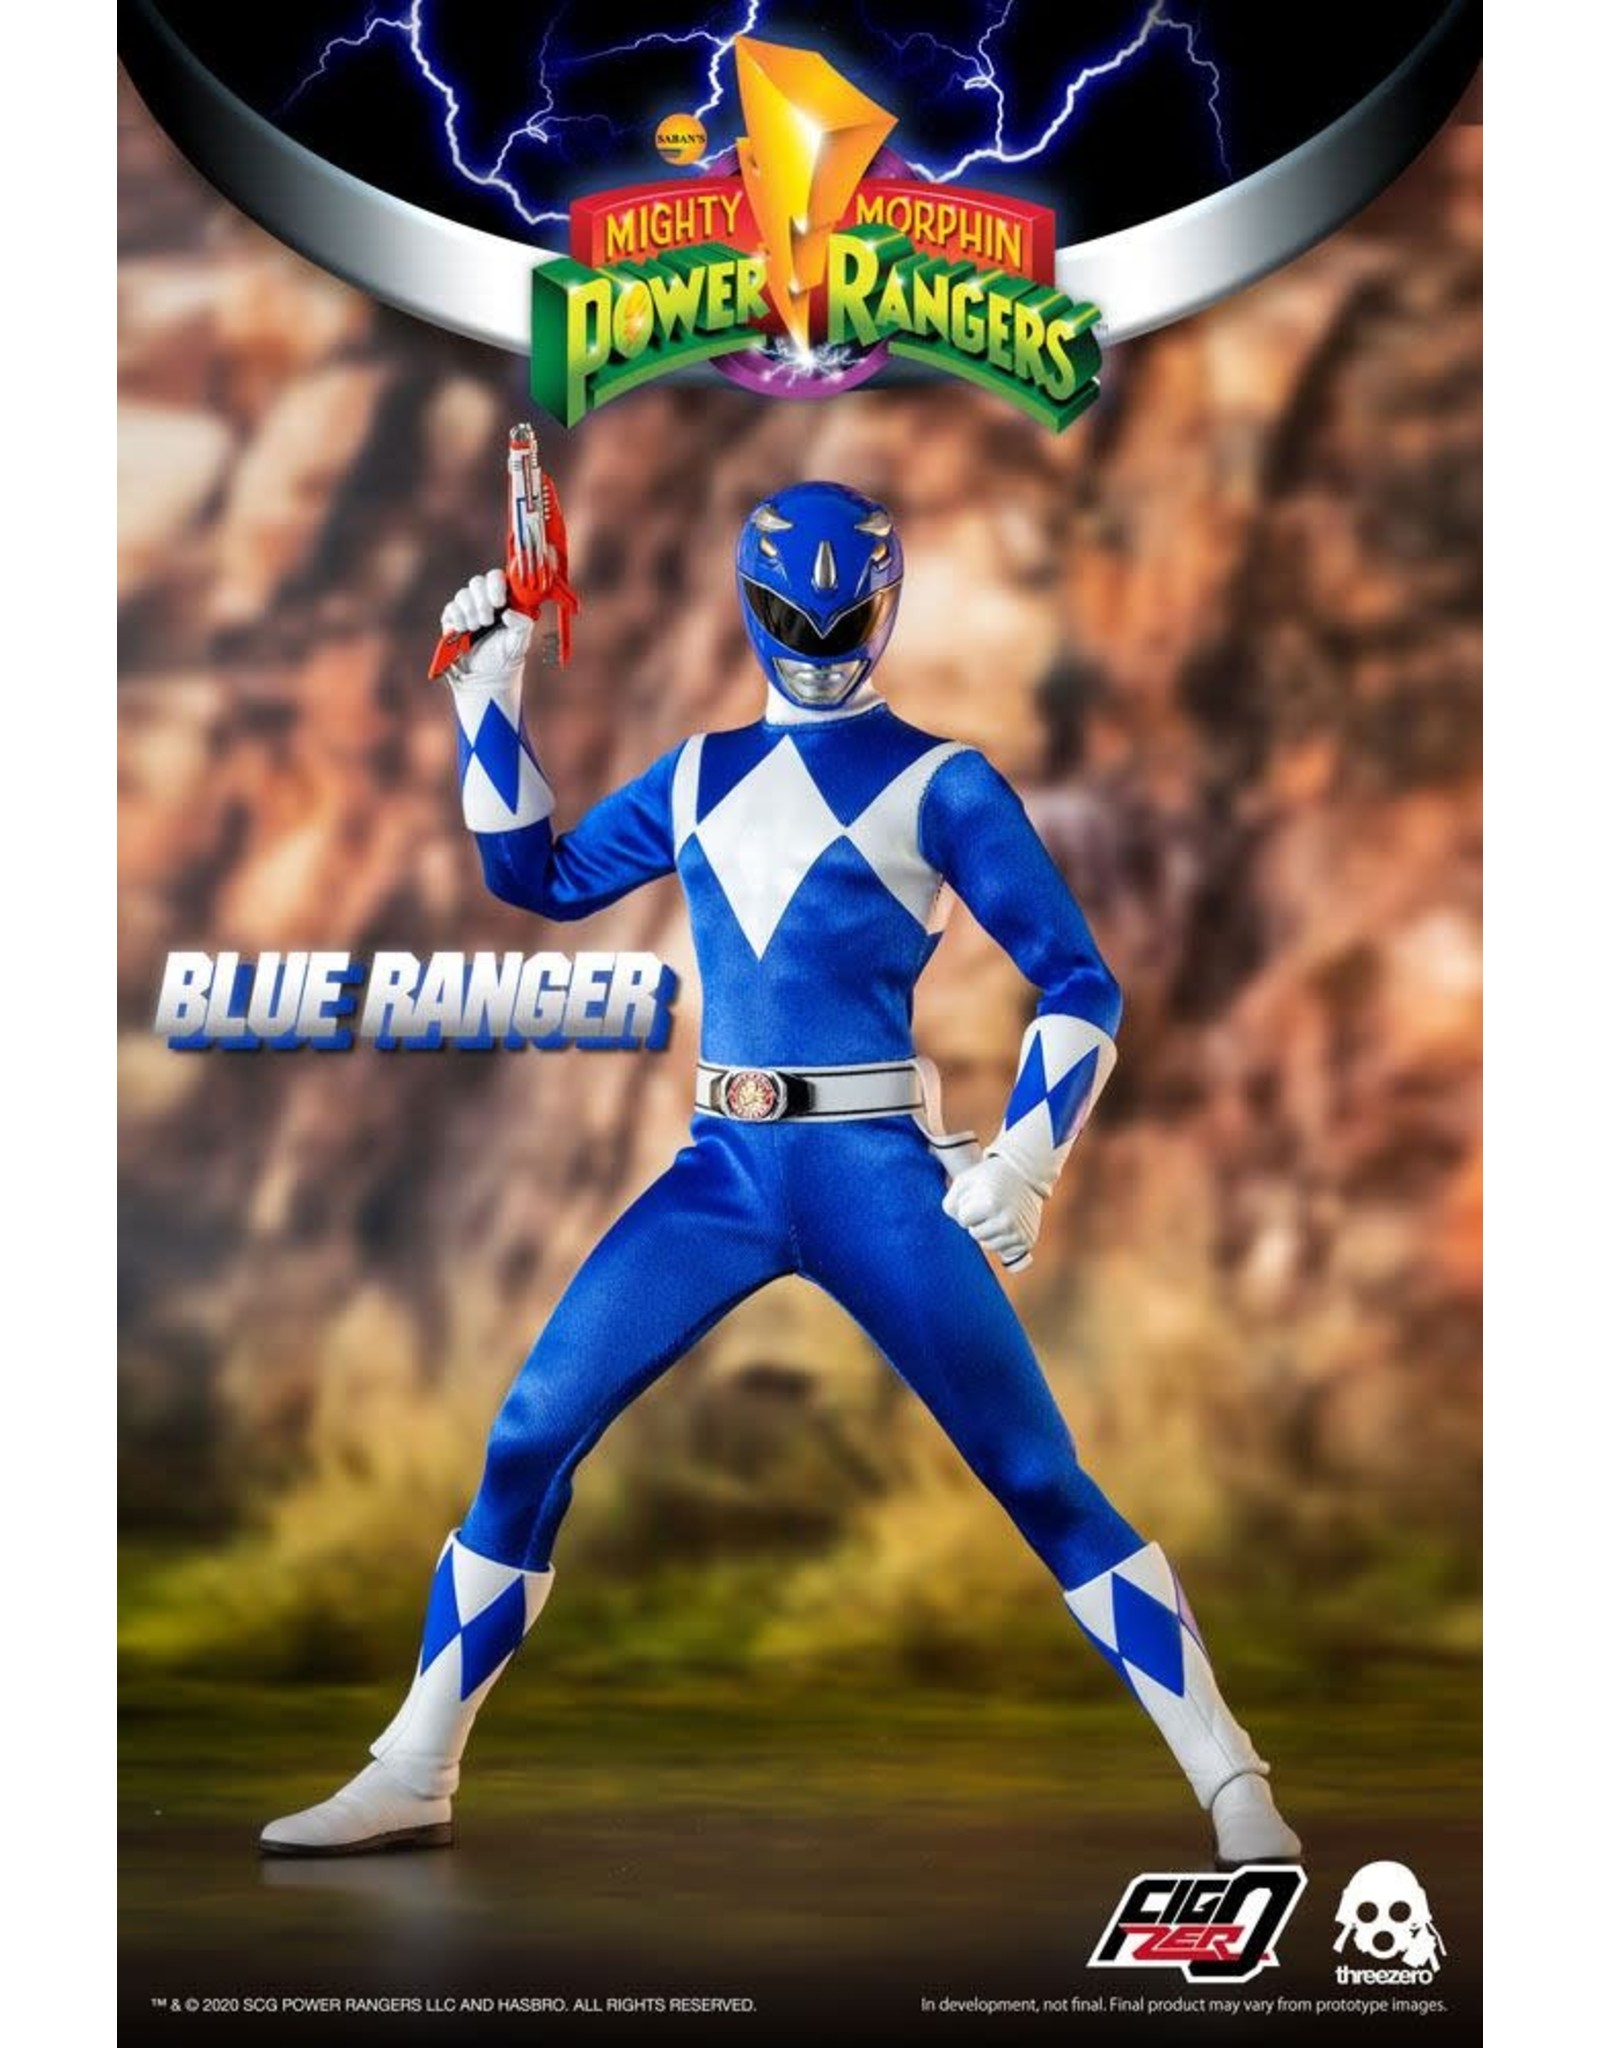 ThreeZero MIGHTY MORPHIN POWER RANGERS FigZero Action Figure 1/6 30cm - Blue Ranger